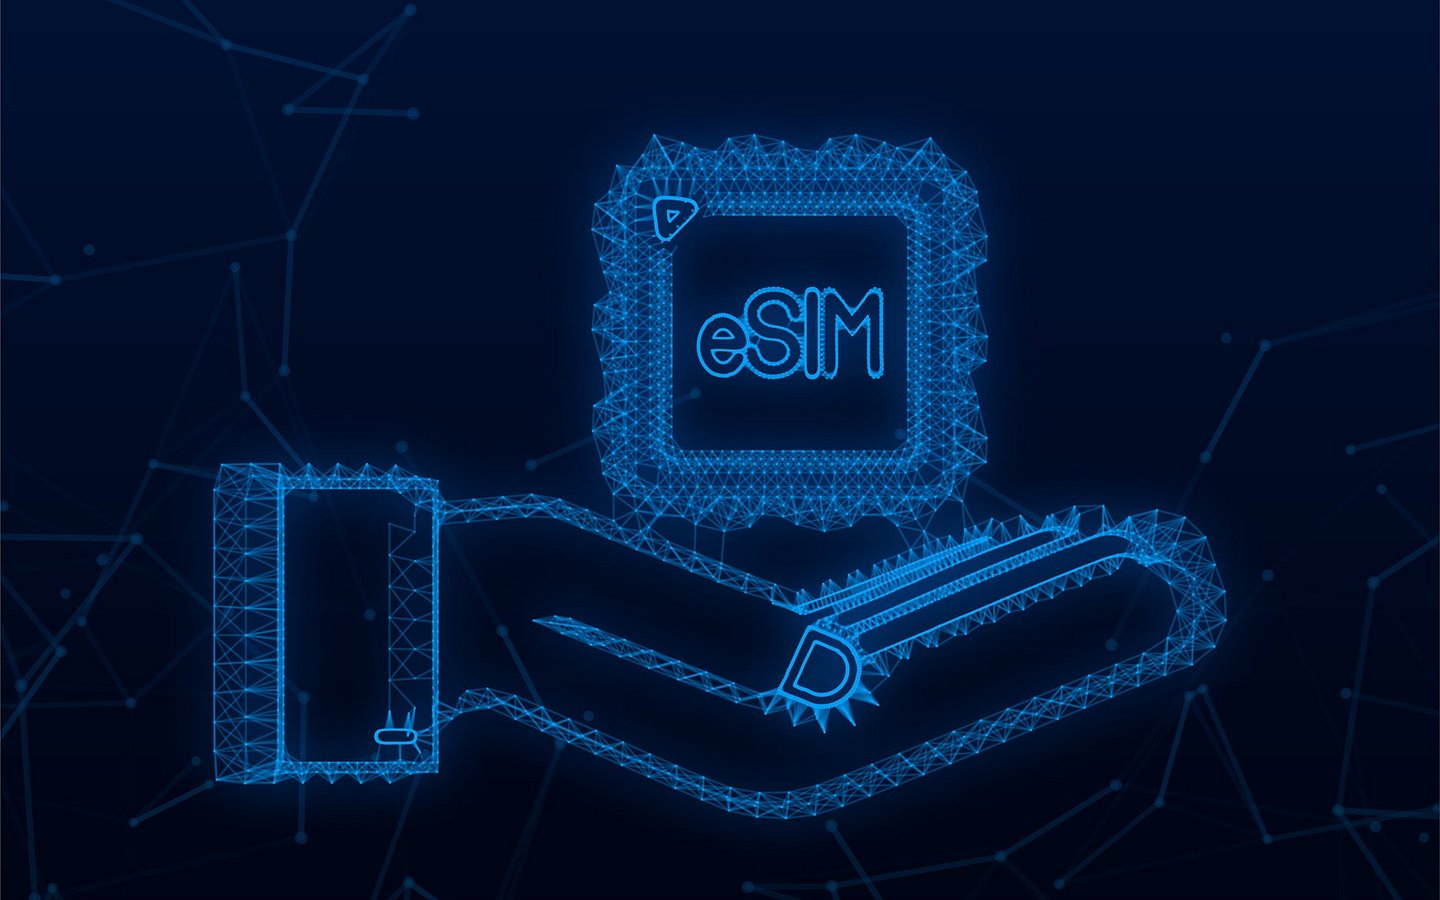 Illustration einer eSim-Karte in einer geöffneten Hand